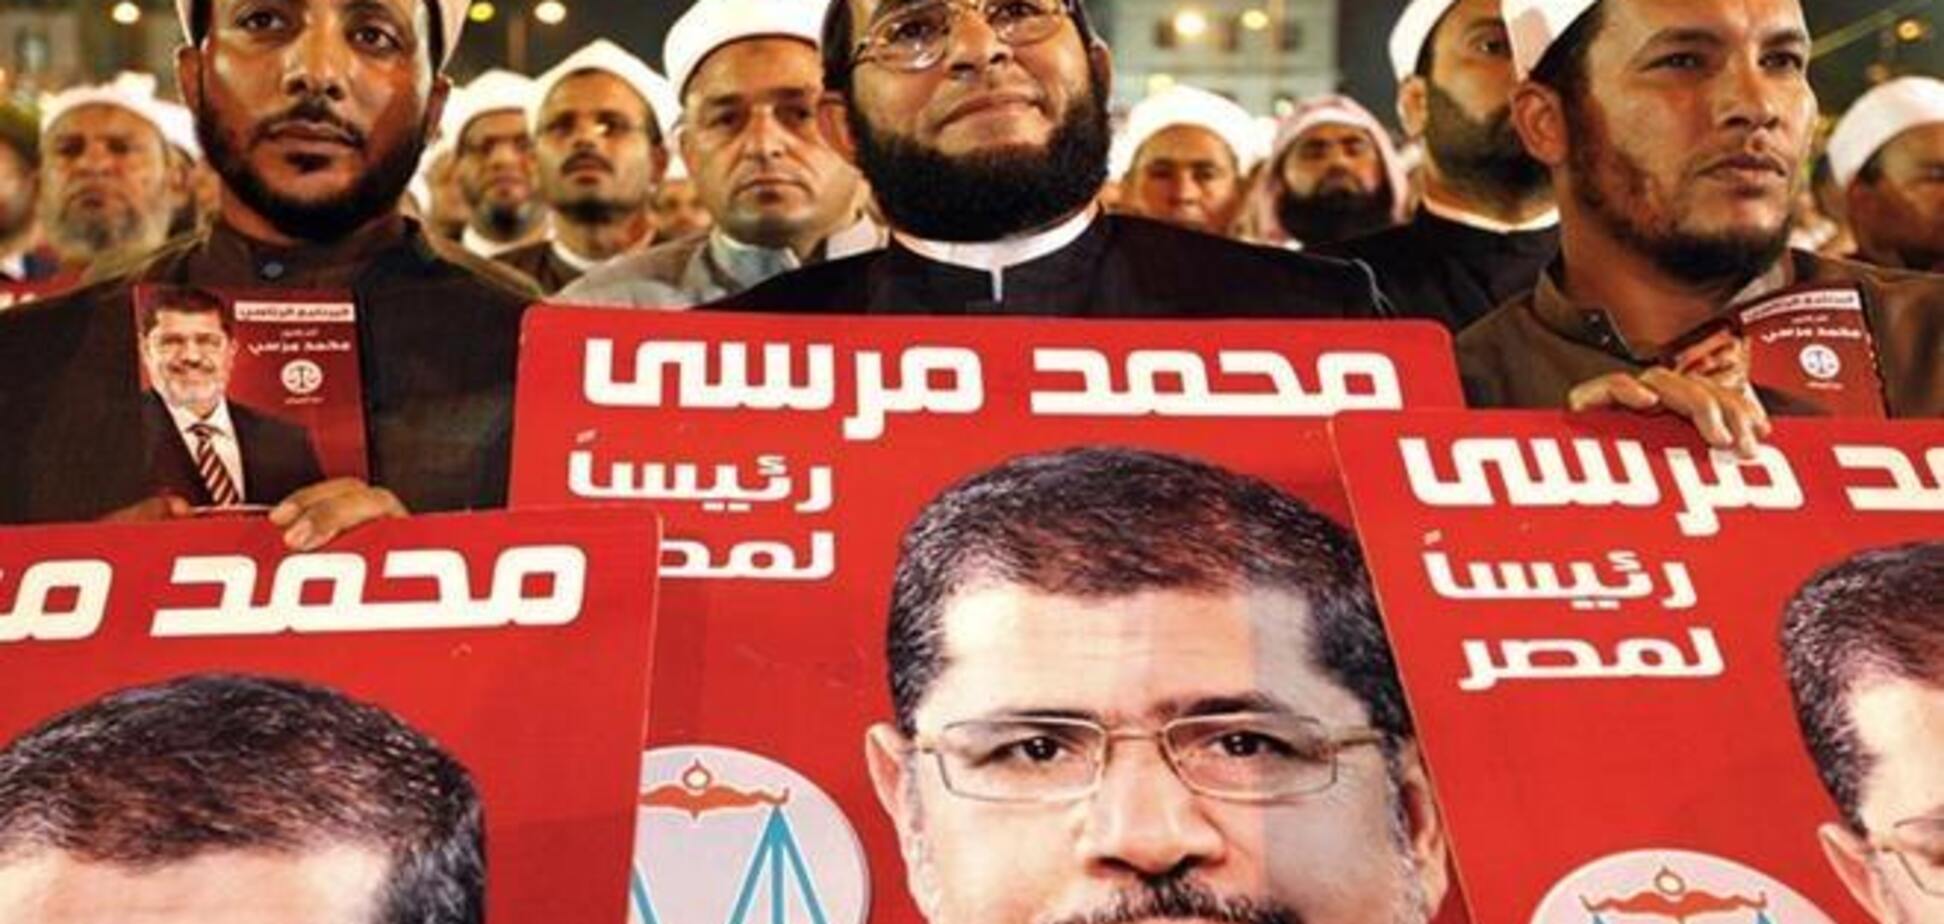 Десять человек погибло в первый день референдума в Египте